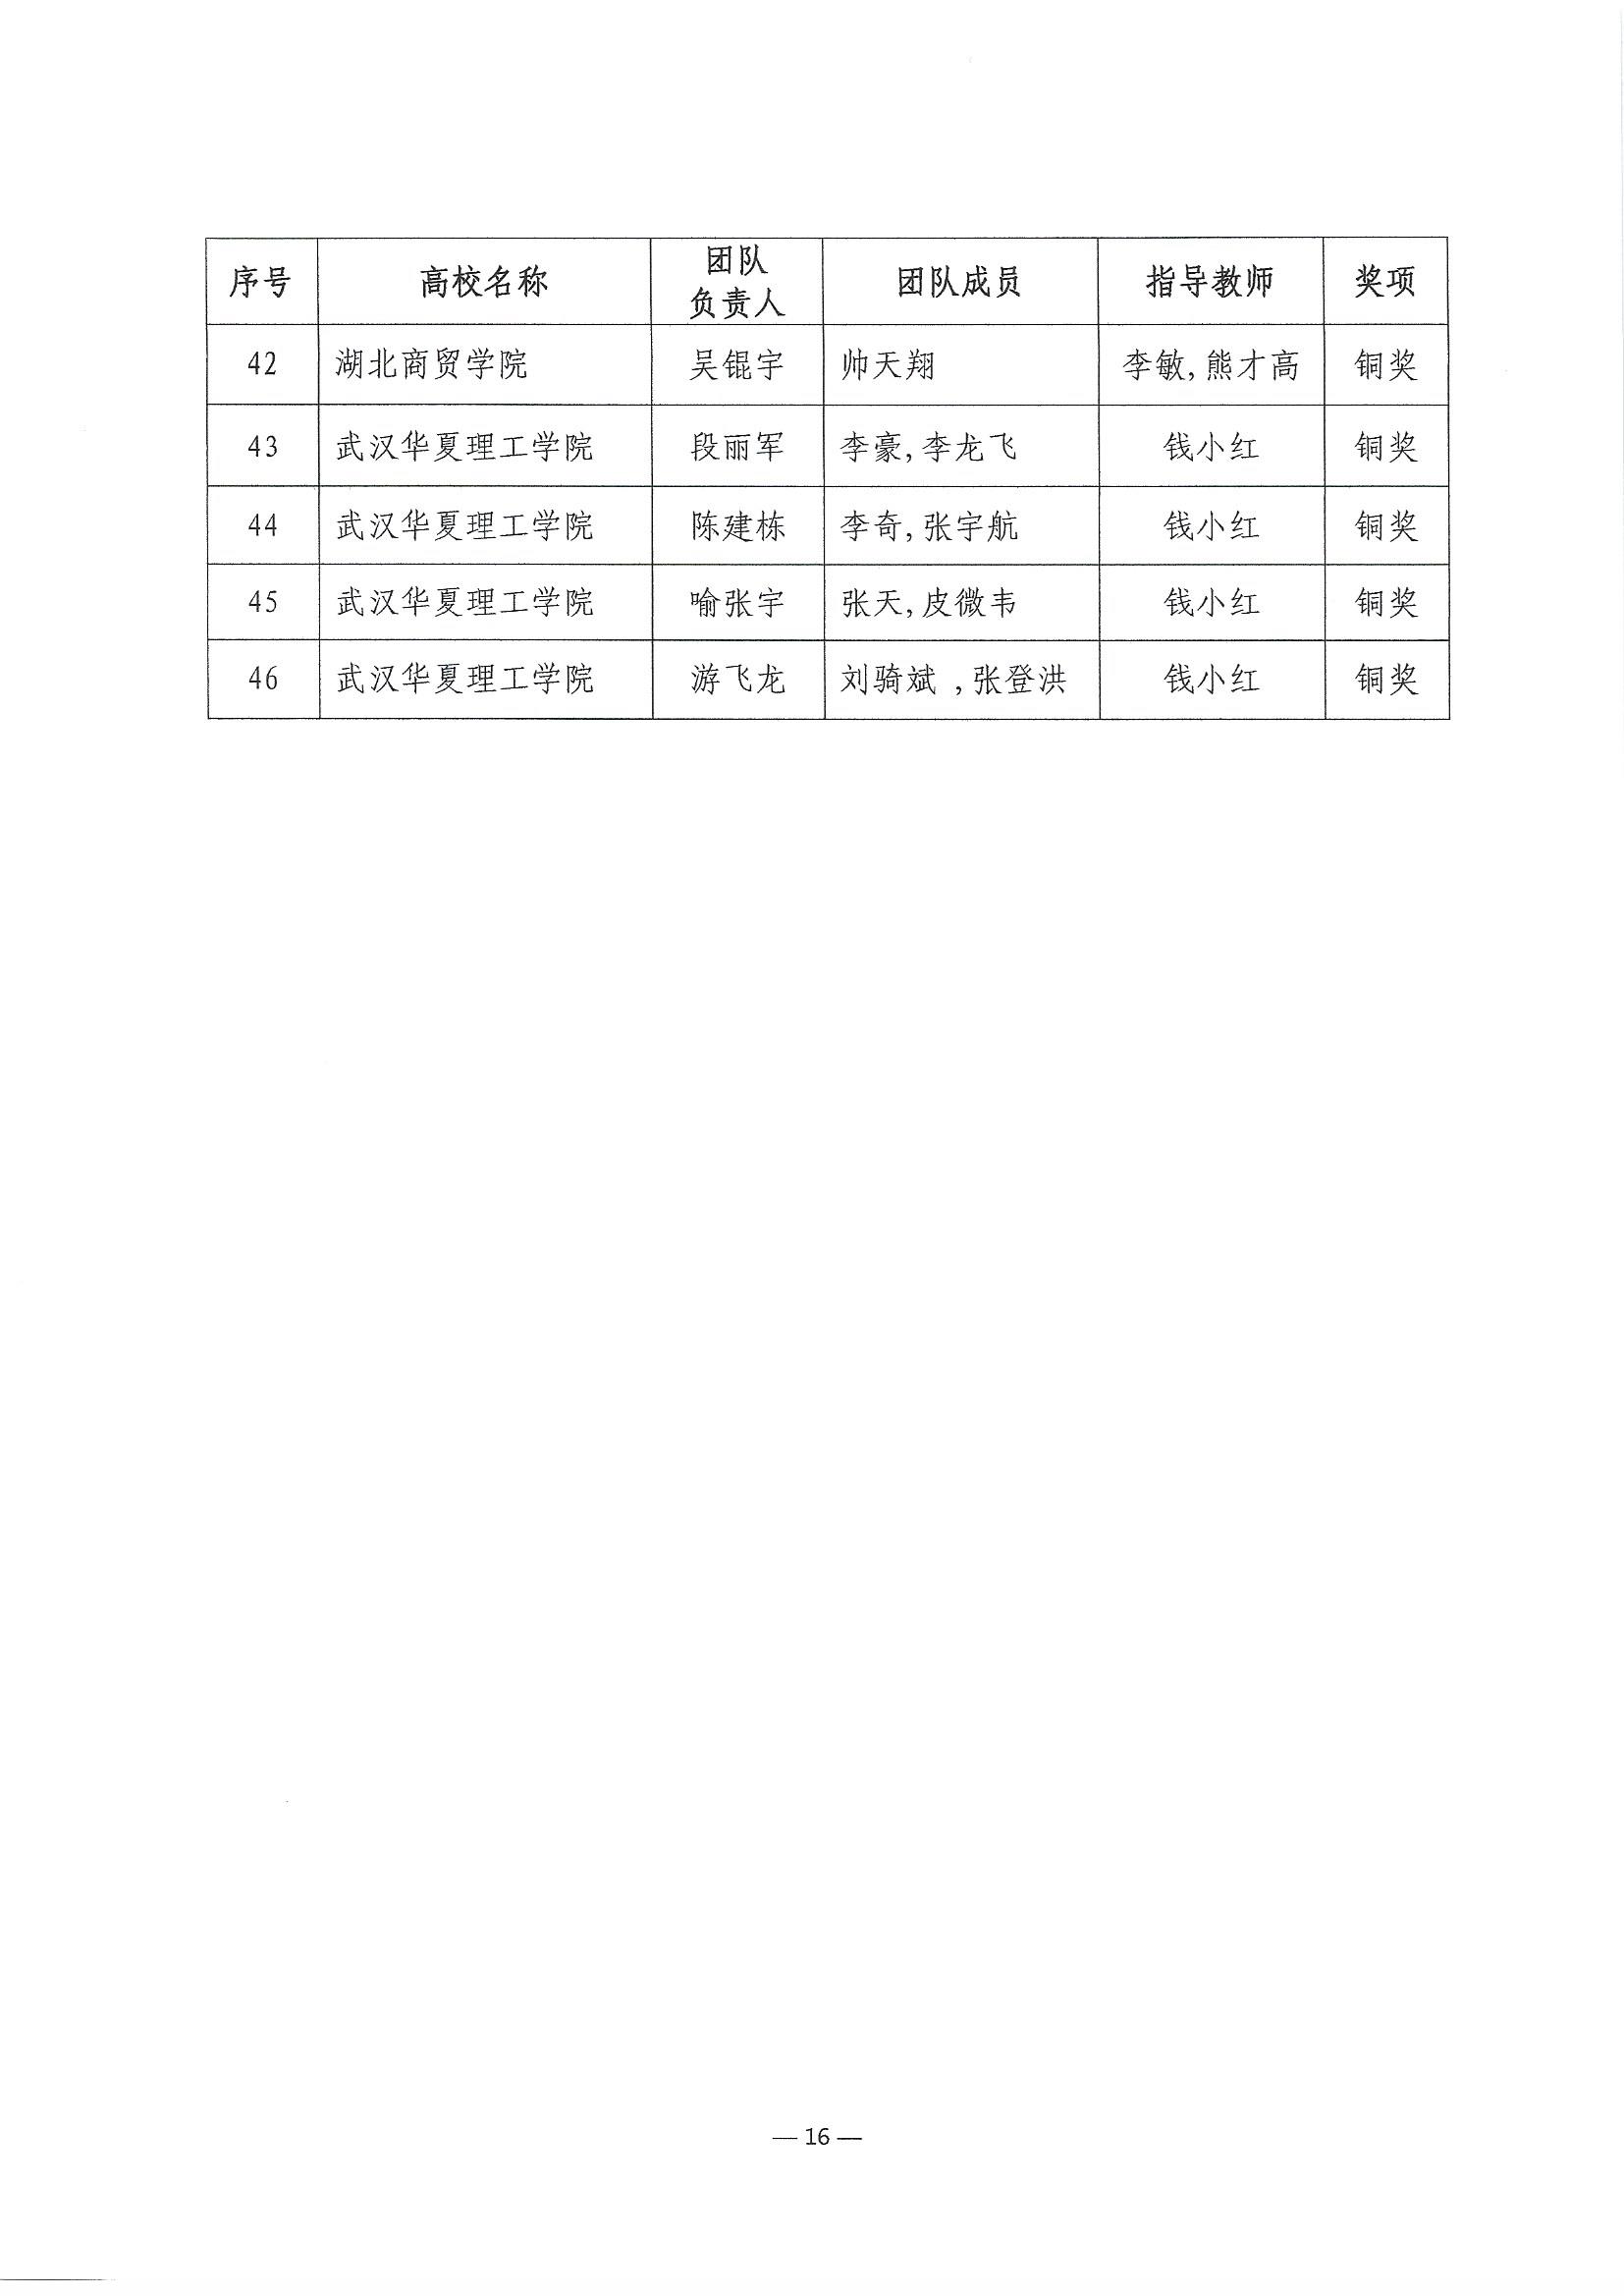 2023.6.8关于公布第二届湖北省大学生信创大赛获奖名单的通知(1)_页面_16.jpg